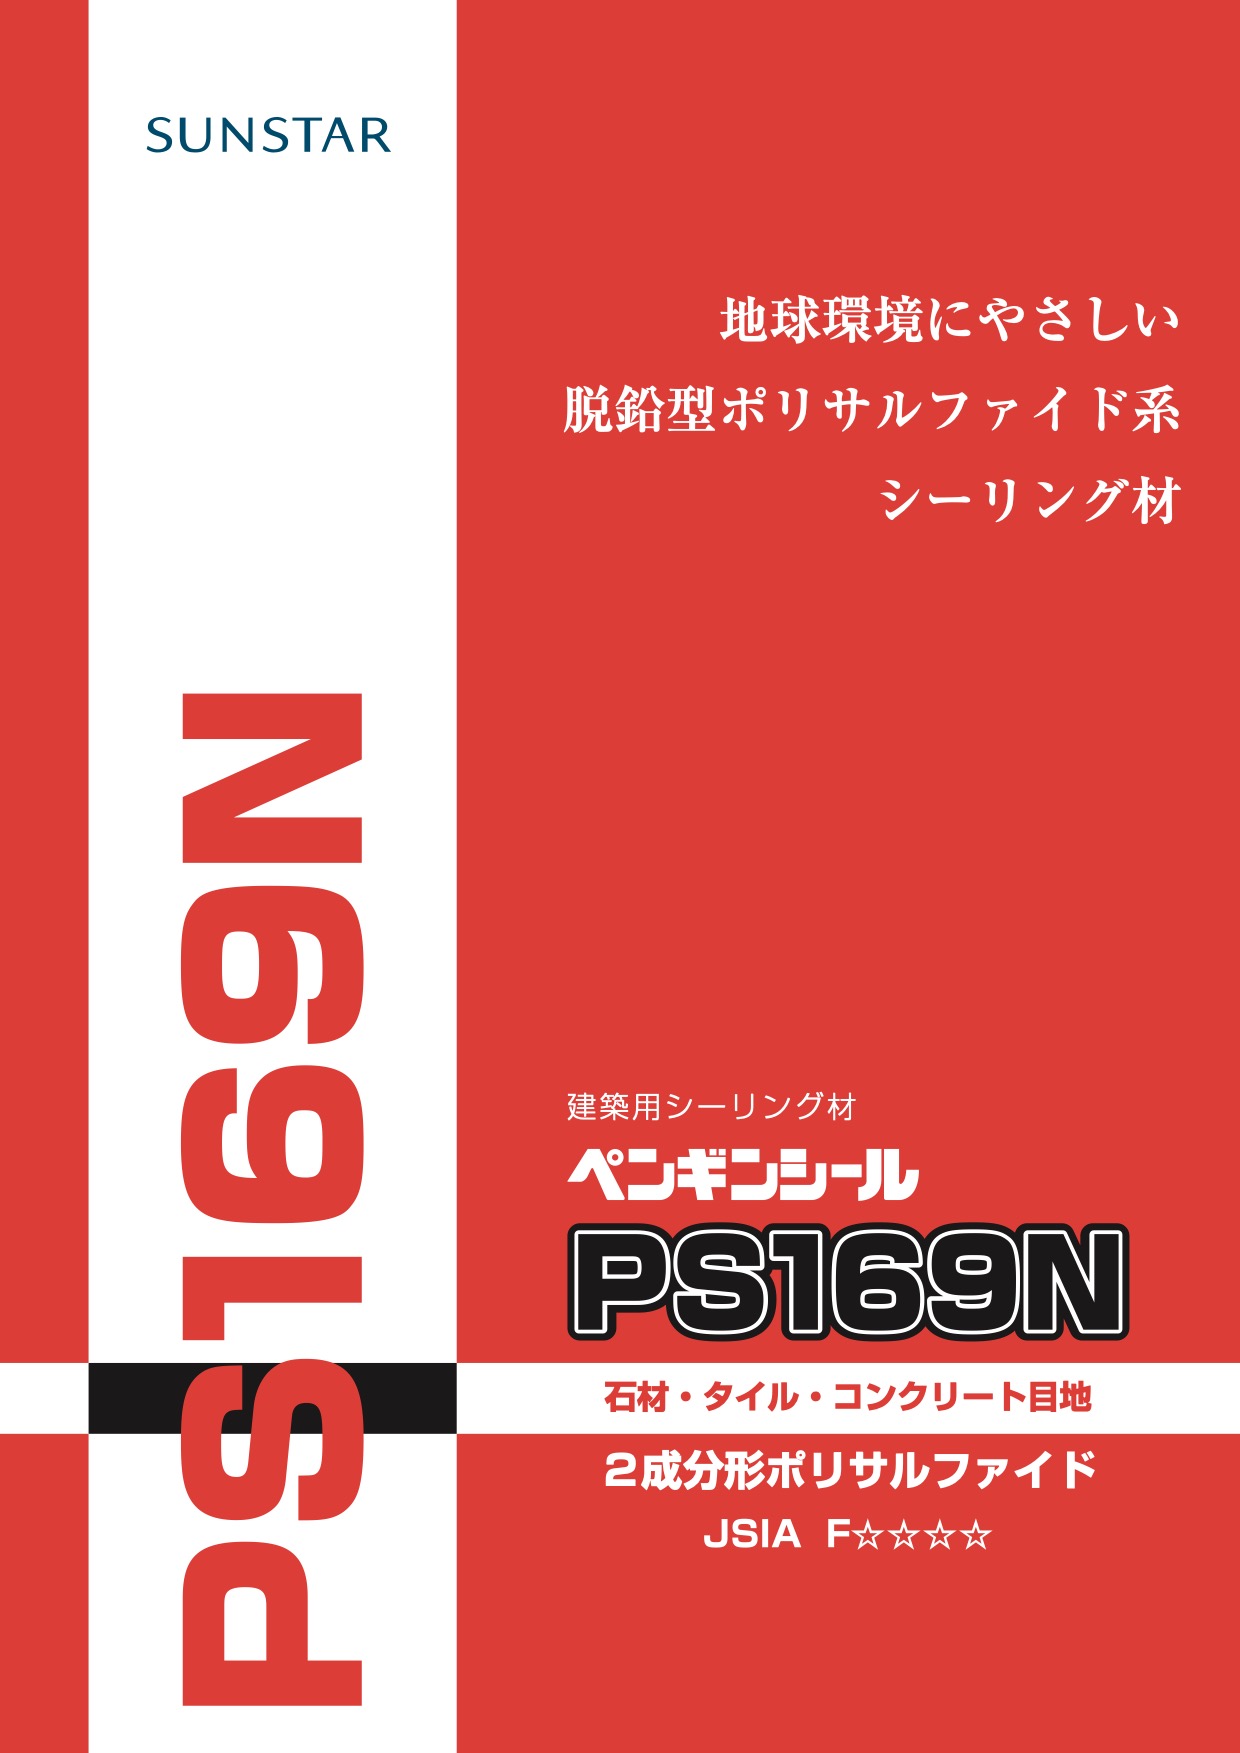 サンスター ペンギンシール 変成シリコン MS2500 typeNB 4L×2缶 金属缶 トナー 200g×2個 セット - 3